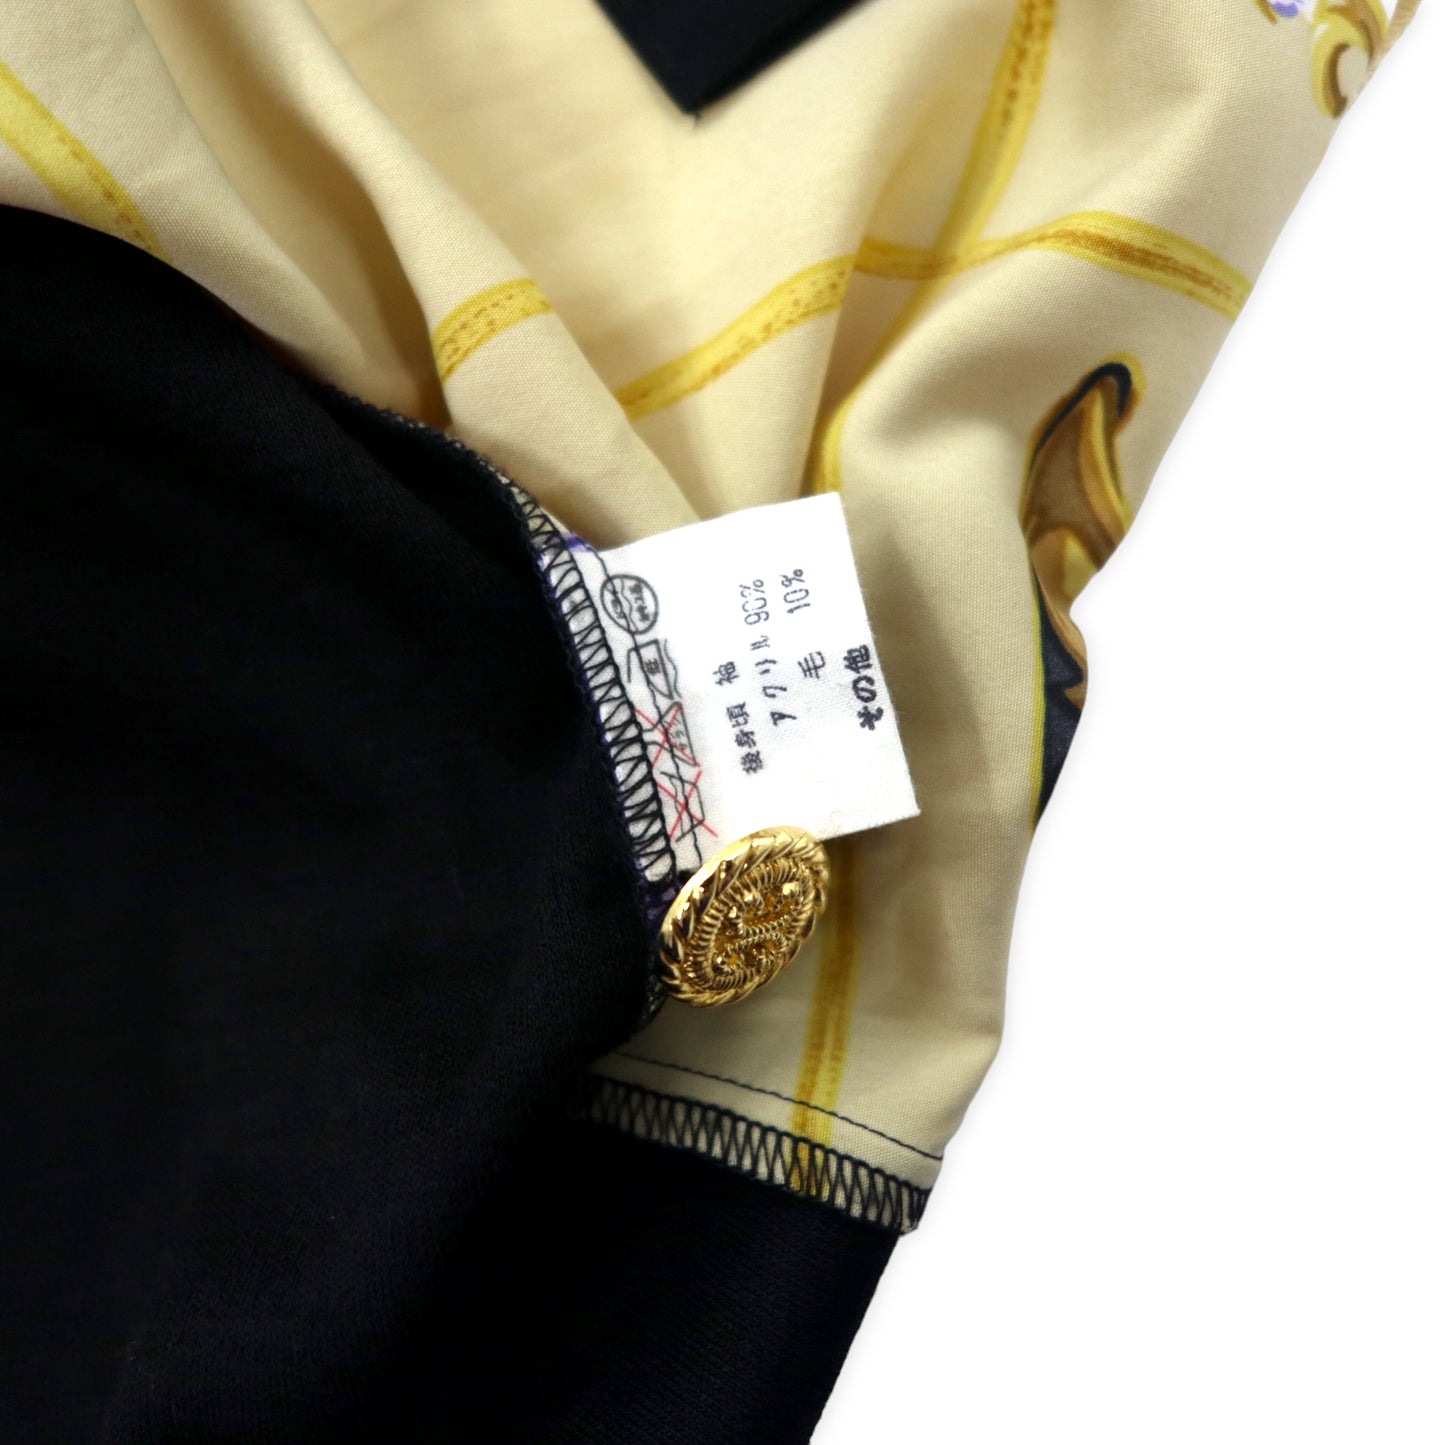 FINAL STAGE レトロ ノーカラーシャツ ブラウス FREE ブラック ベージュ 総柄 金ボタン 日本製